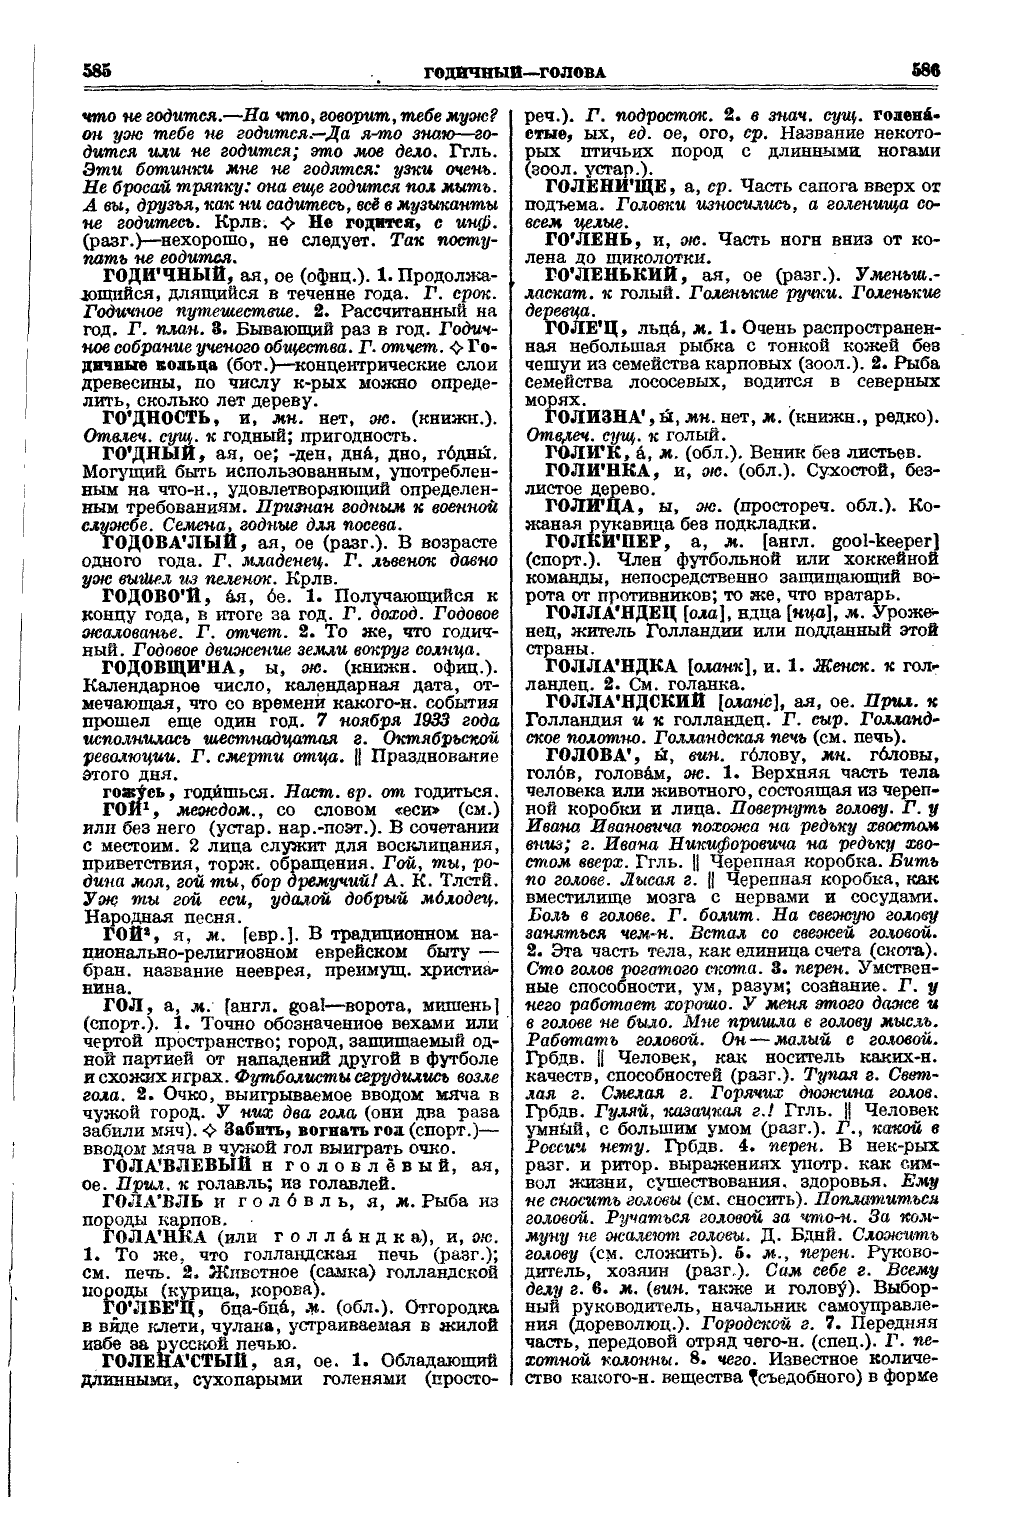 Фотокопия pdf / скан страницы 331 толкового словаря Ушакова (том 1)